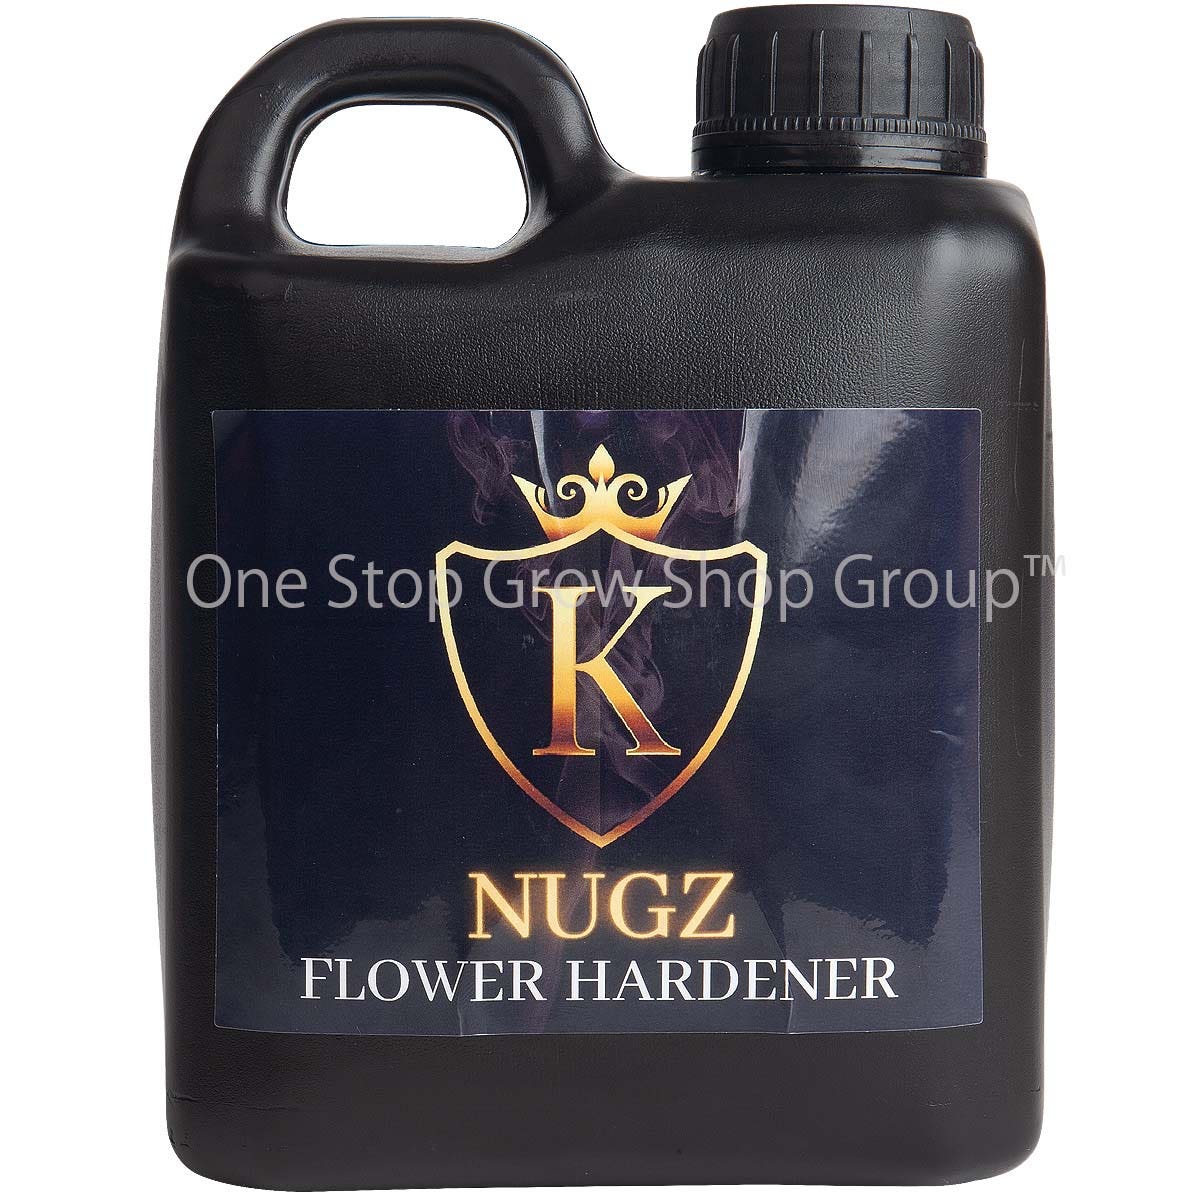 Nugz Flower Hardener - 1 litre